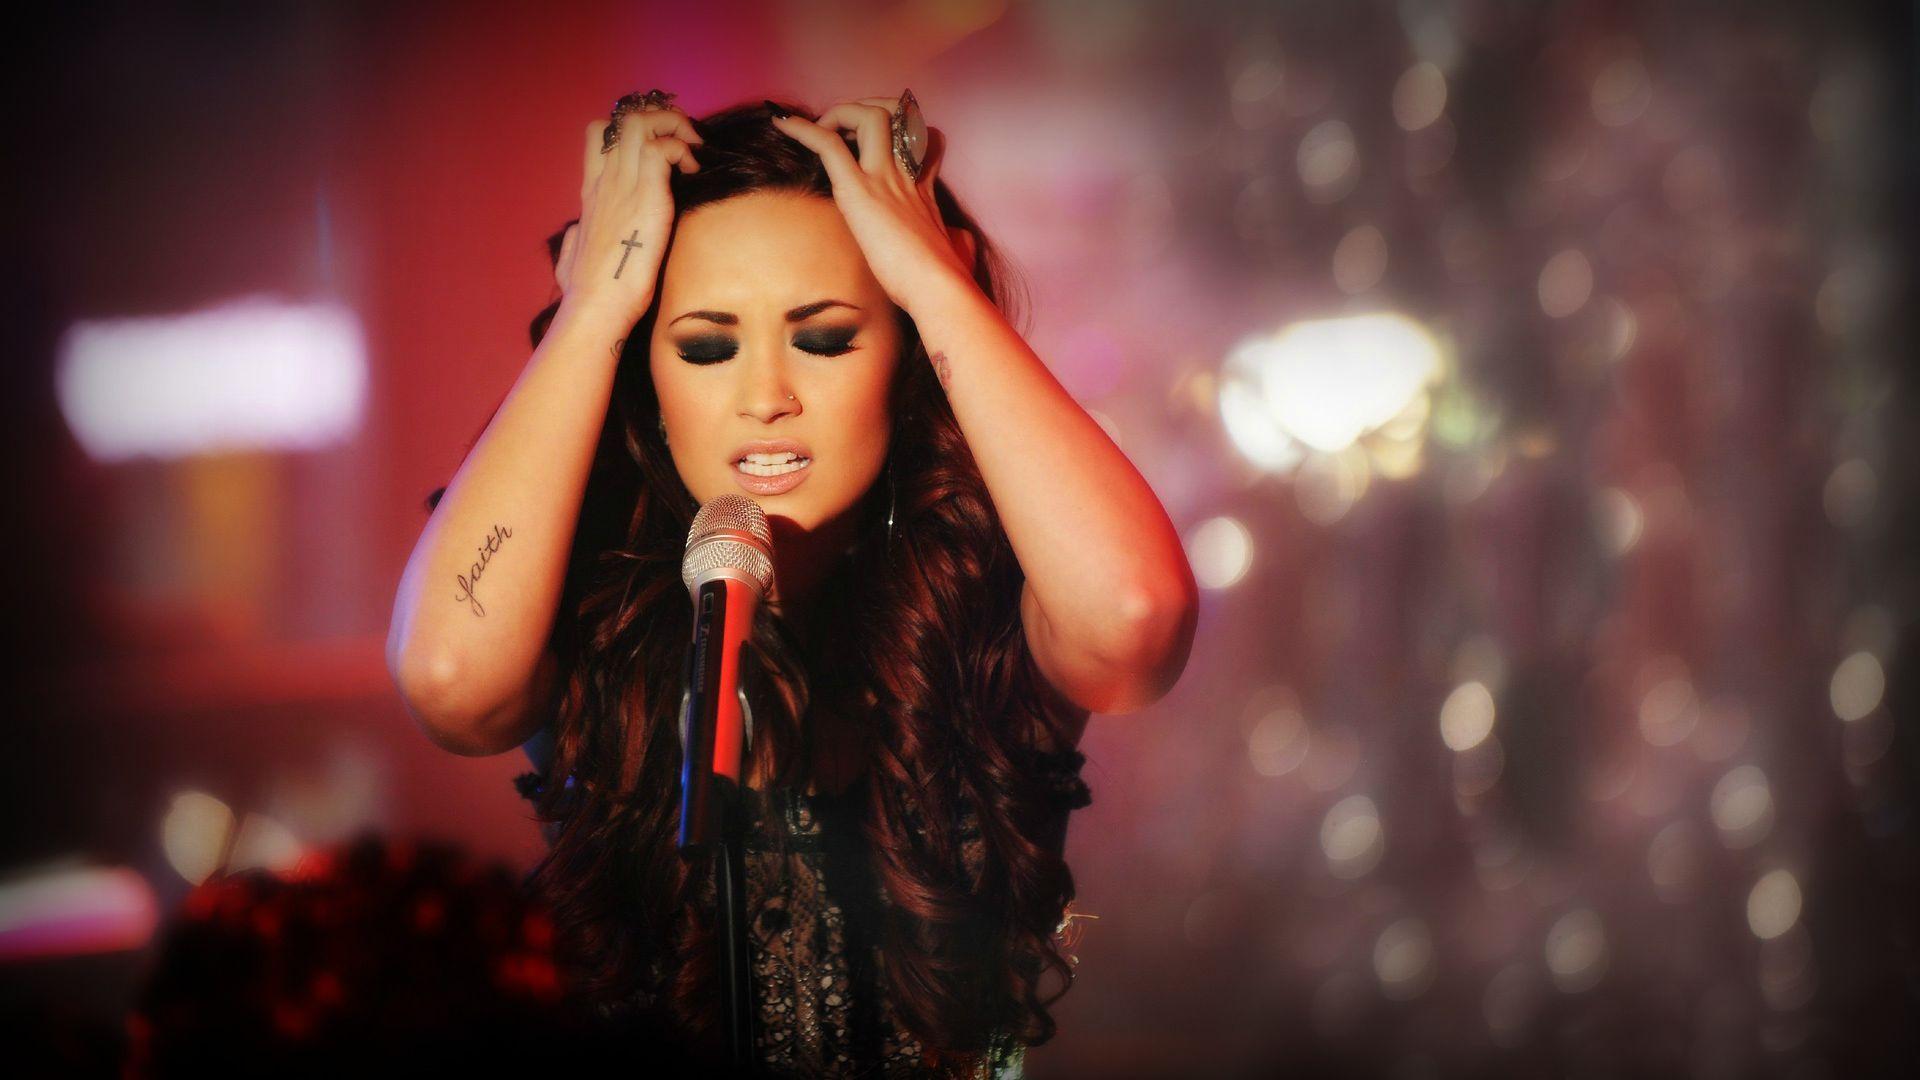 Demi Lovato Tattoo Wallpaper HD Free Download. High Quality